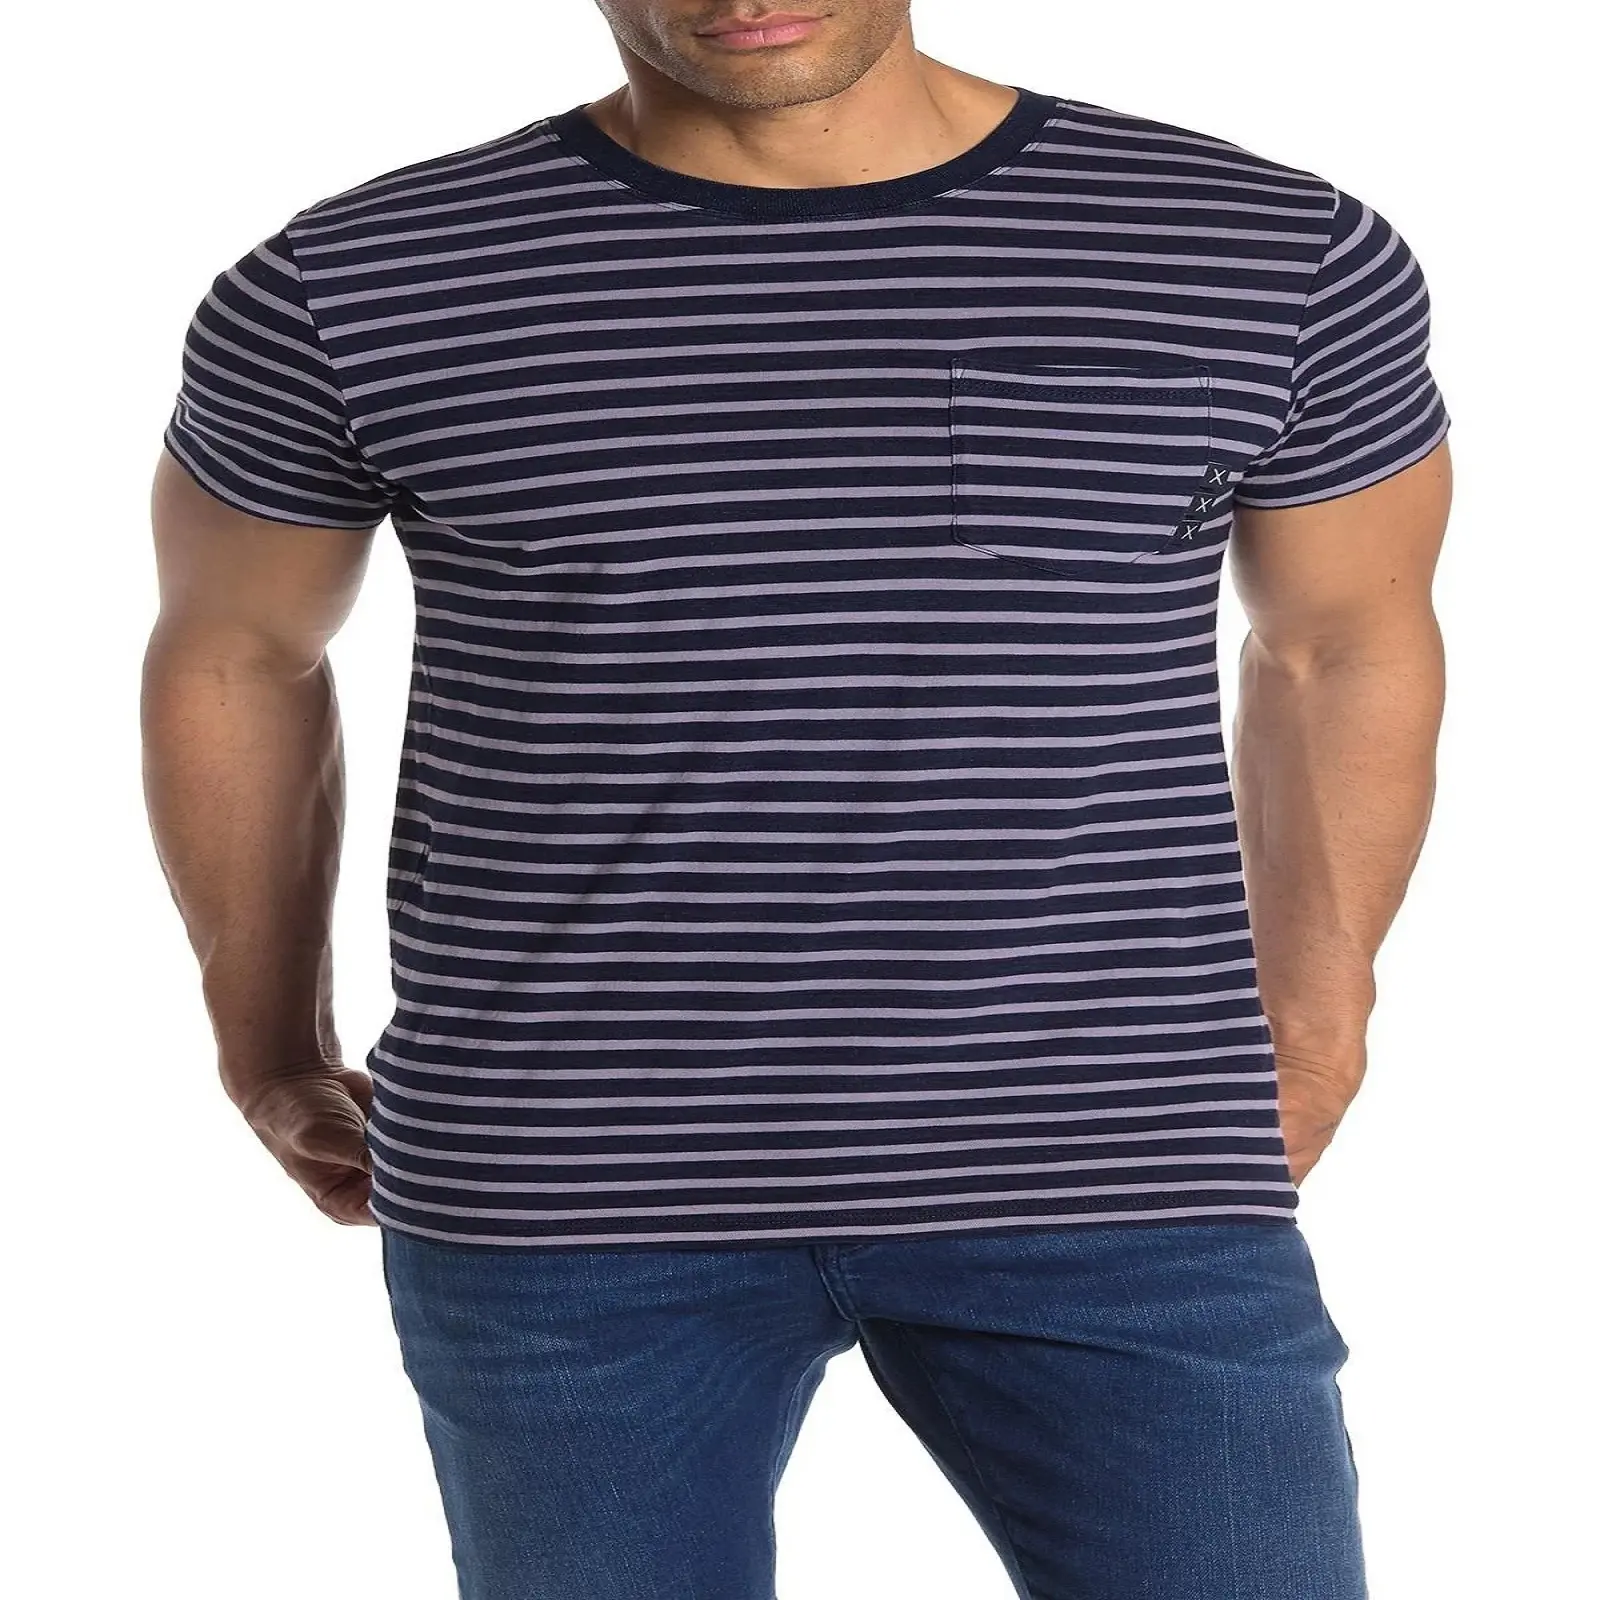 Toptan şerit tasarım çok renkli özel % 100% pamuk erkek t-shirtü özel renk tasarım logo